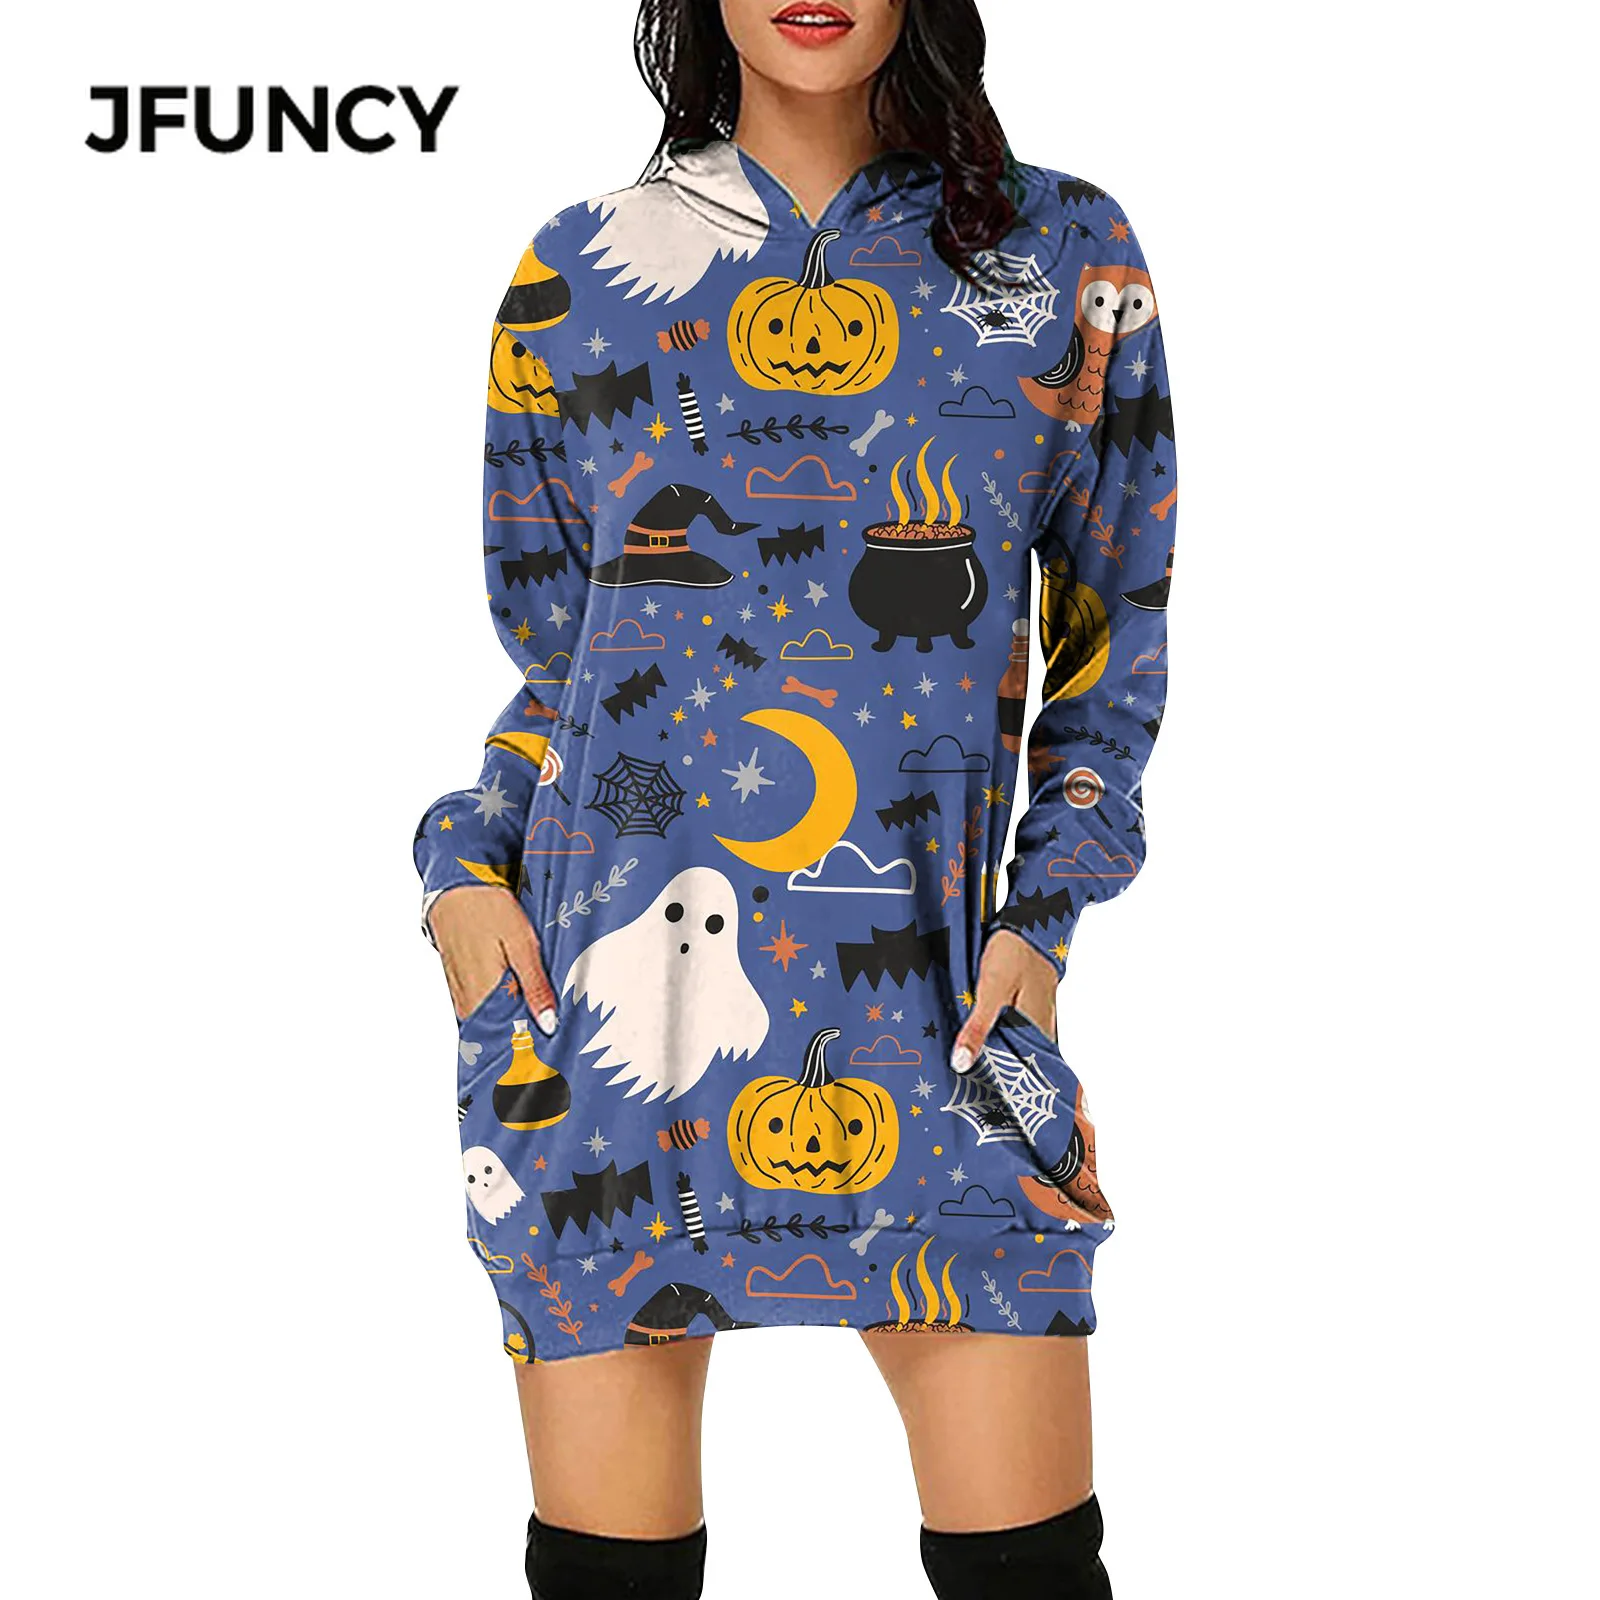 

JFUNCY Хэллоуин женский свитер платье Осень Мультфильм Тыква печати женщина пуловер с капюшоном с длинным рукавом Мини платья одежда